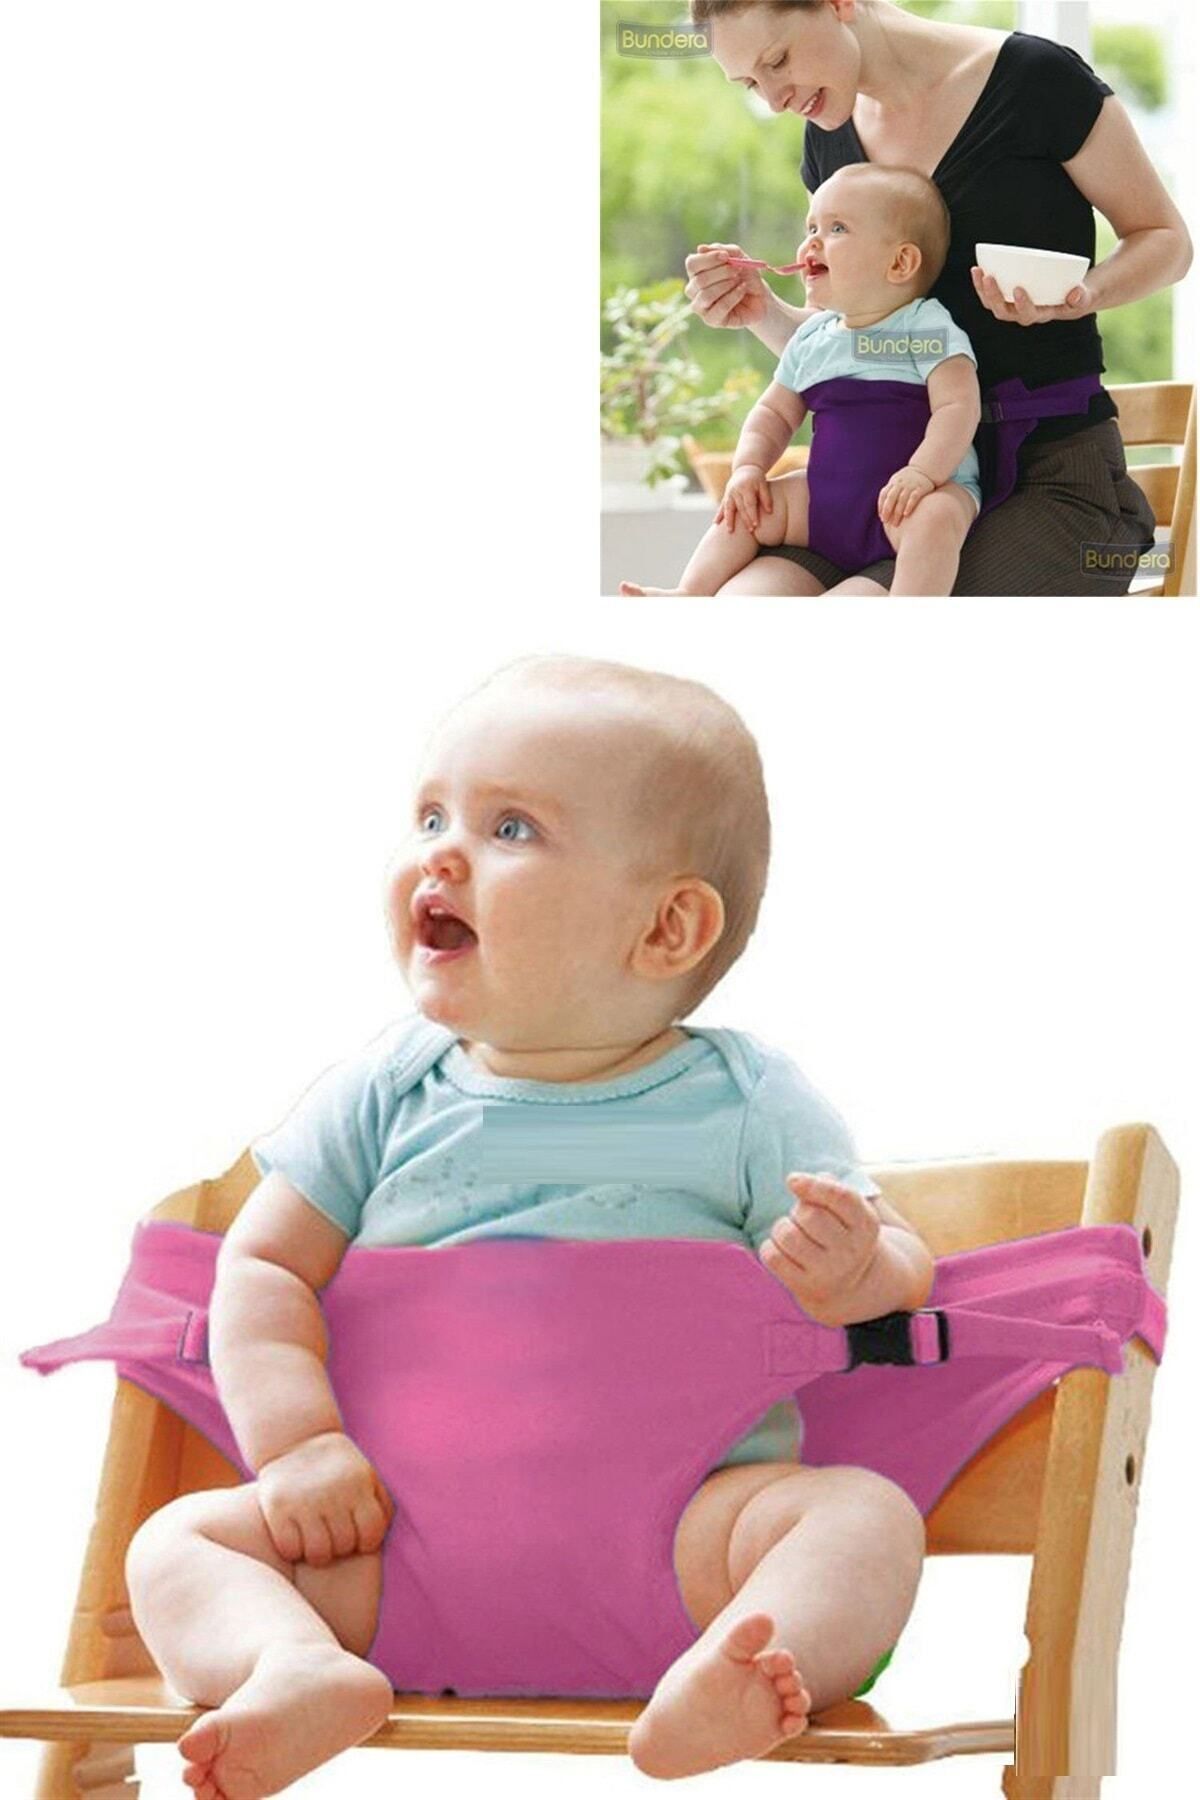 Bundera Bebek Mama Sandalyesi Pembe Emniyet Kemeri, Bebek Güvenlik Kemeri  Kilit Bebek Koruma Koruyucu Kılıf